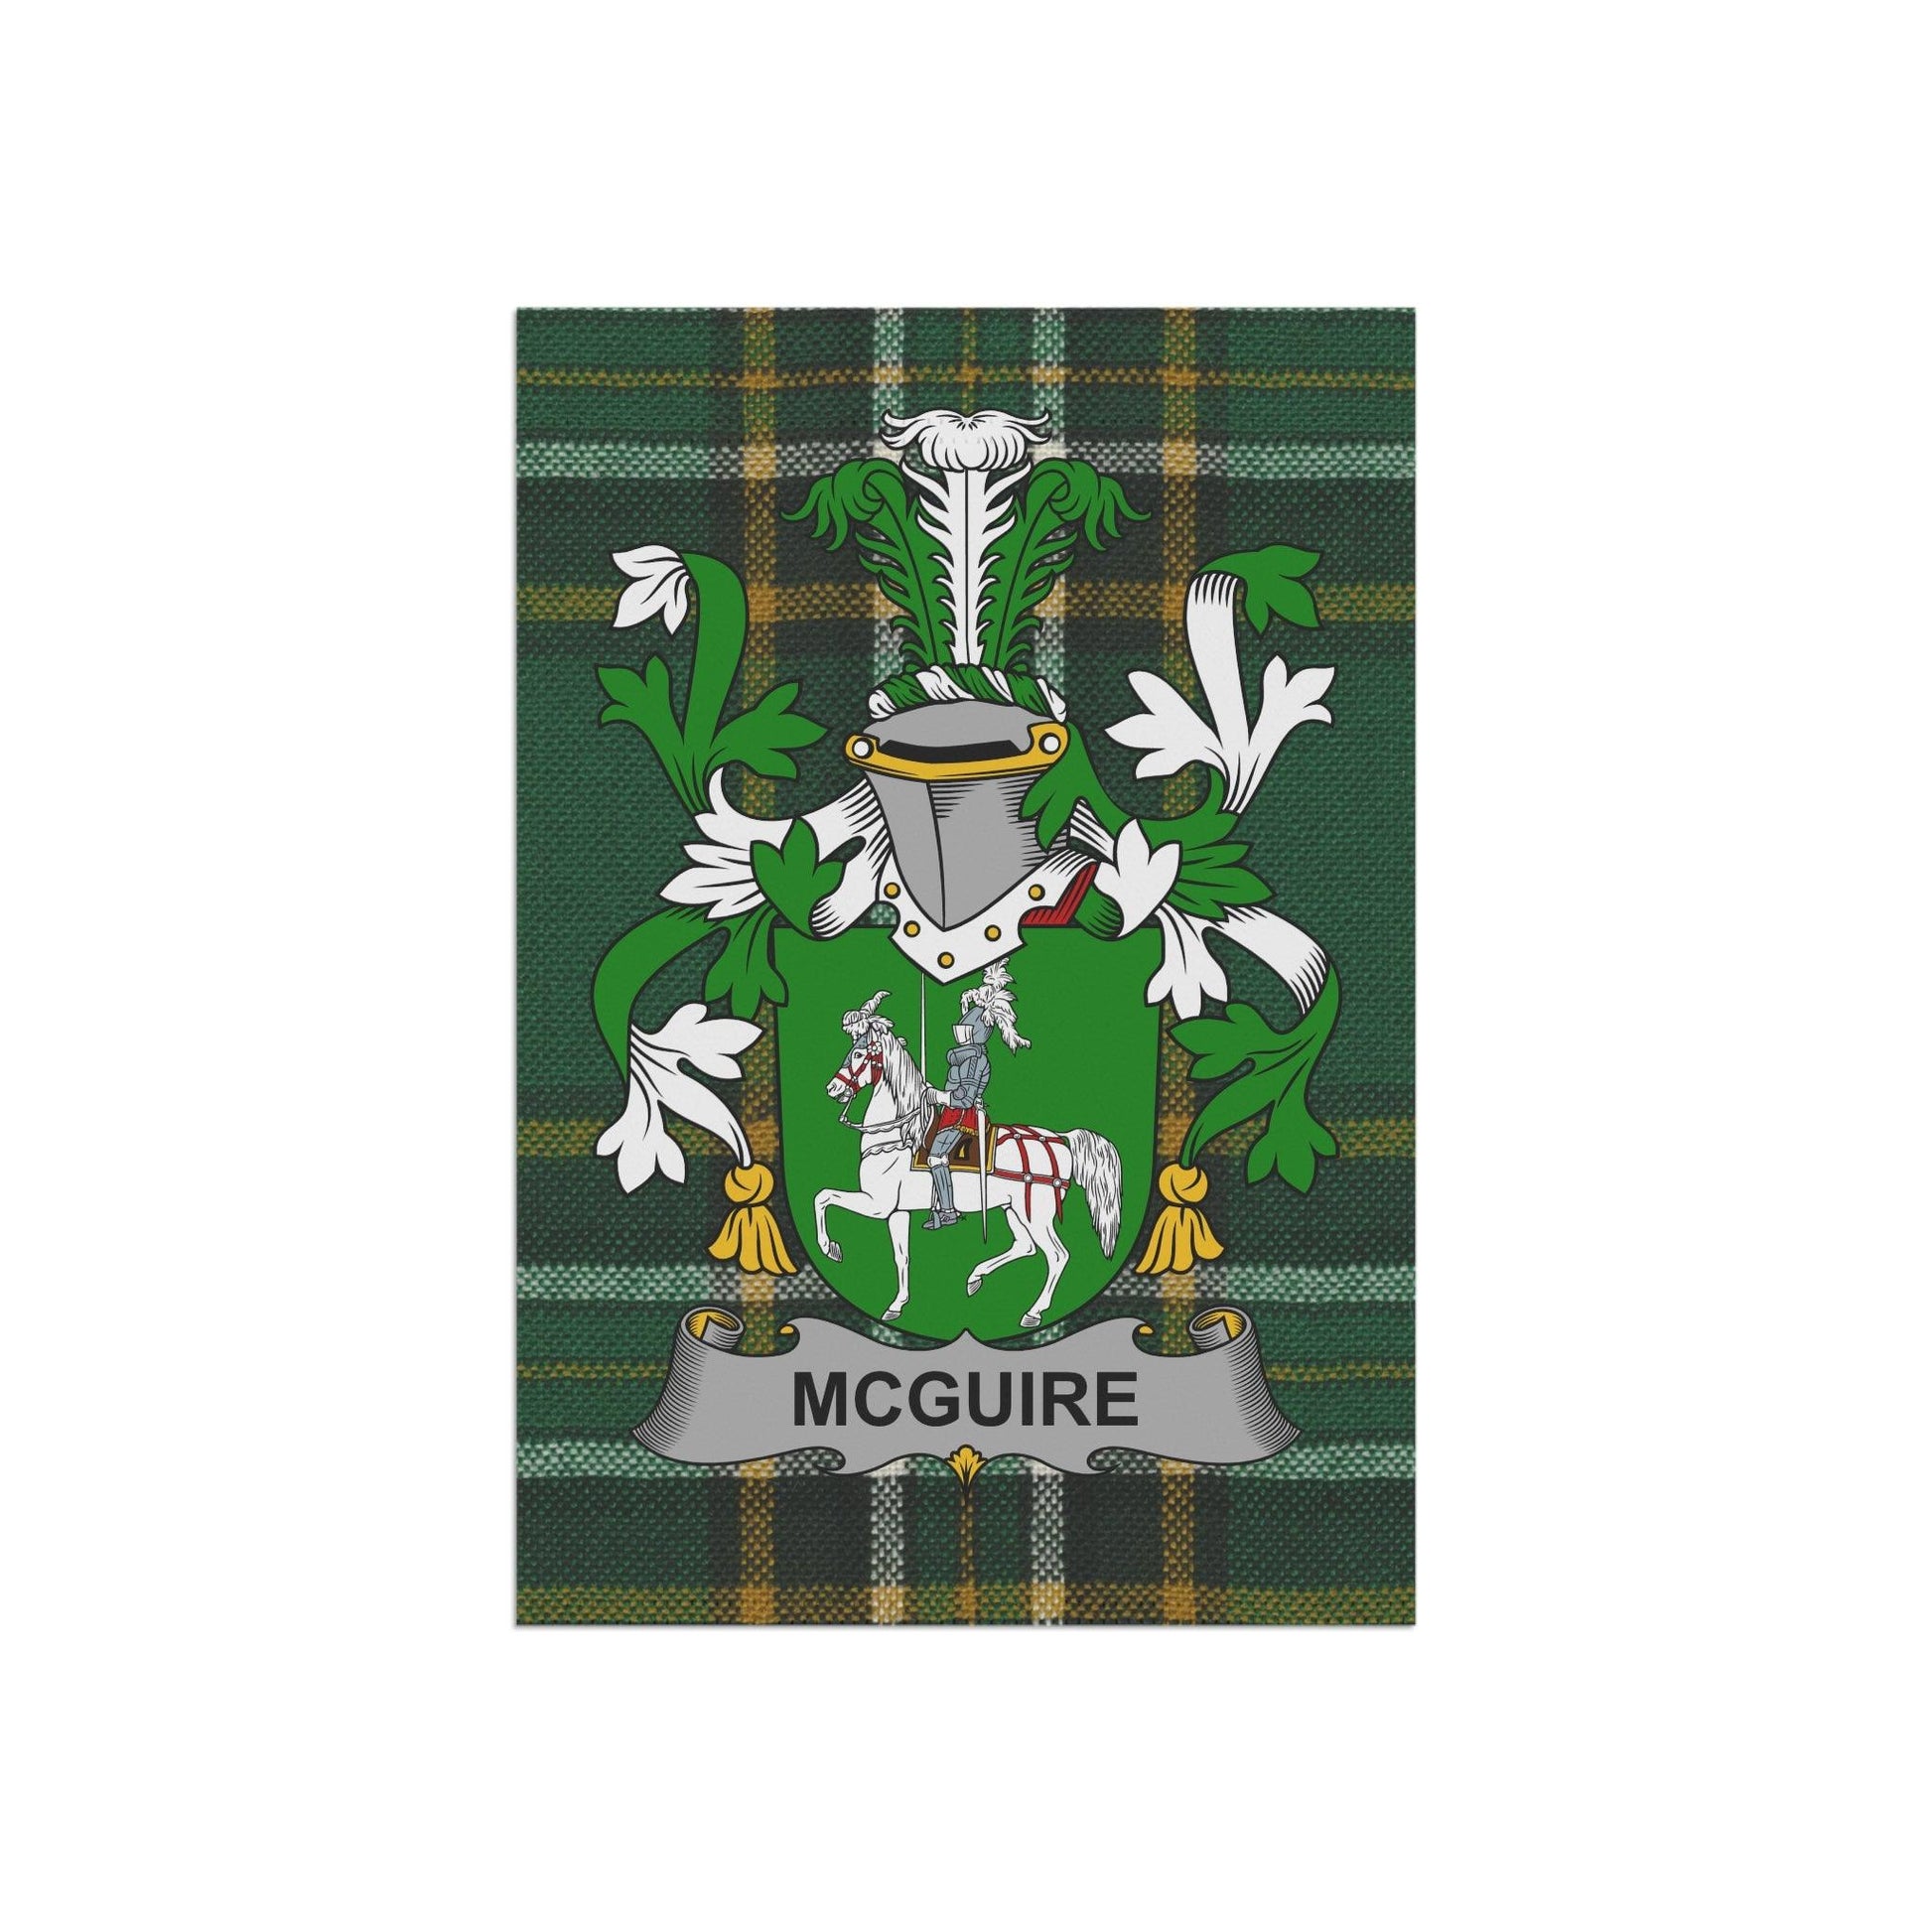 McGuire Coat Of Arms Irish Garden Flag